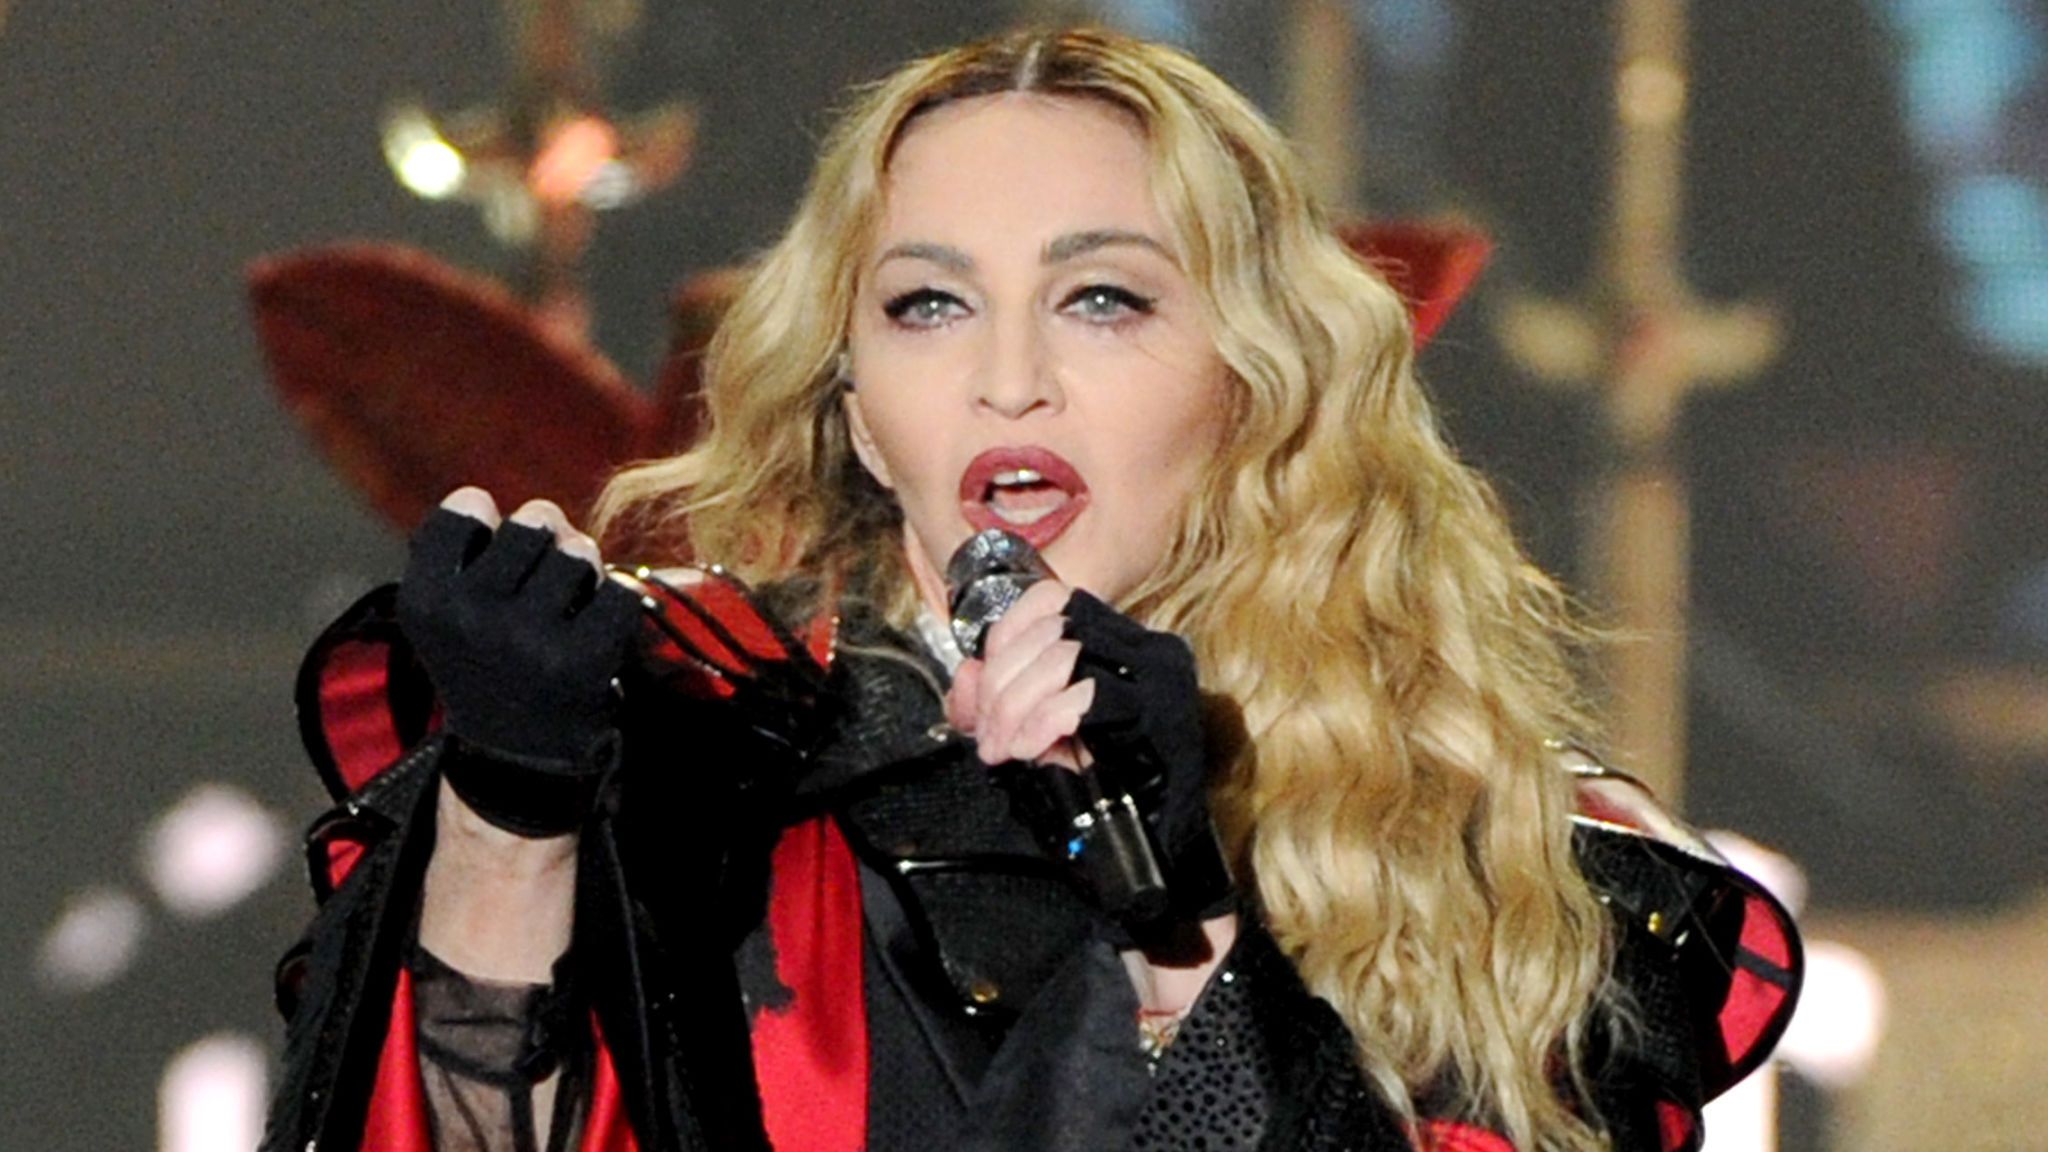 Instagram elimina publicación de Madonna, sobre teoría conspirativa del Coronavirus